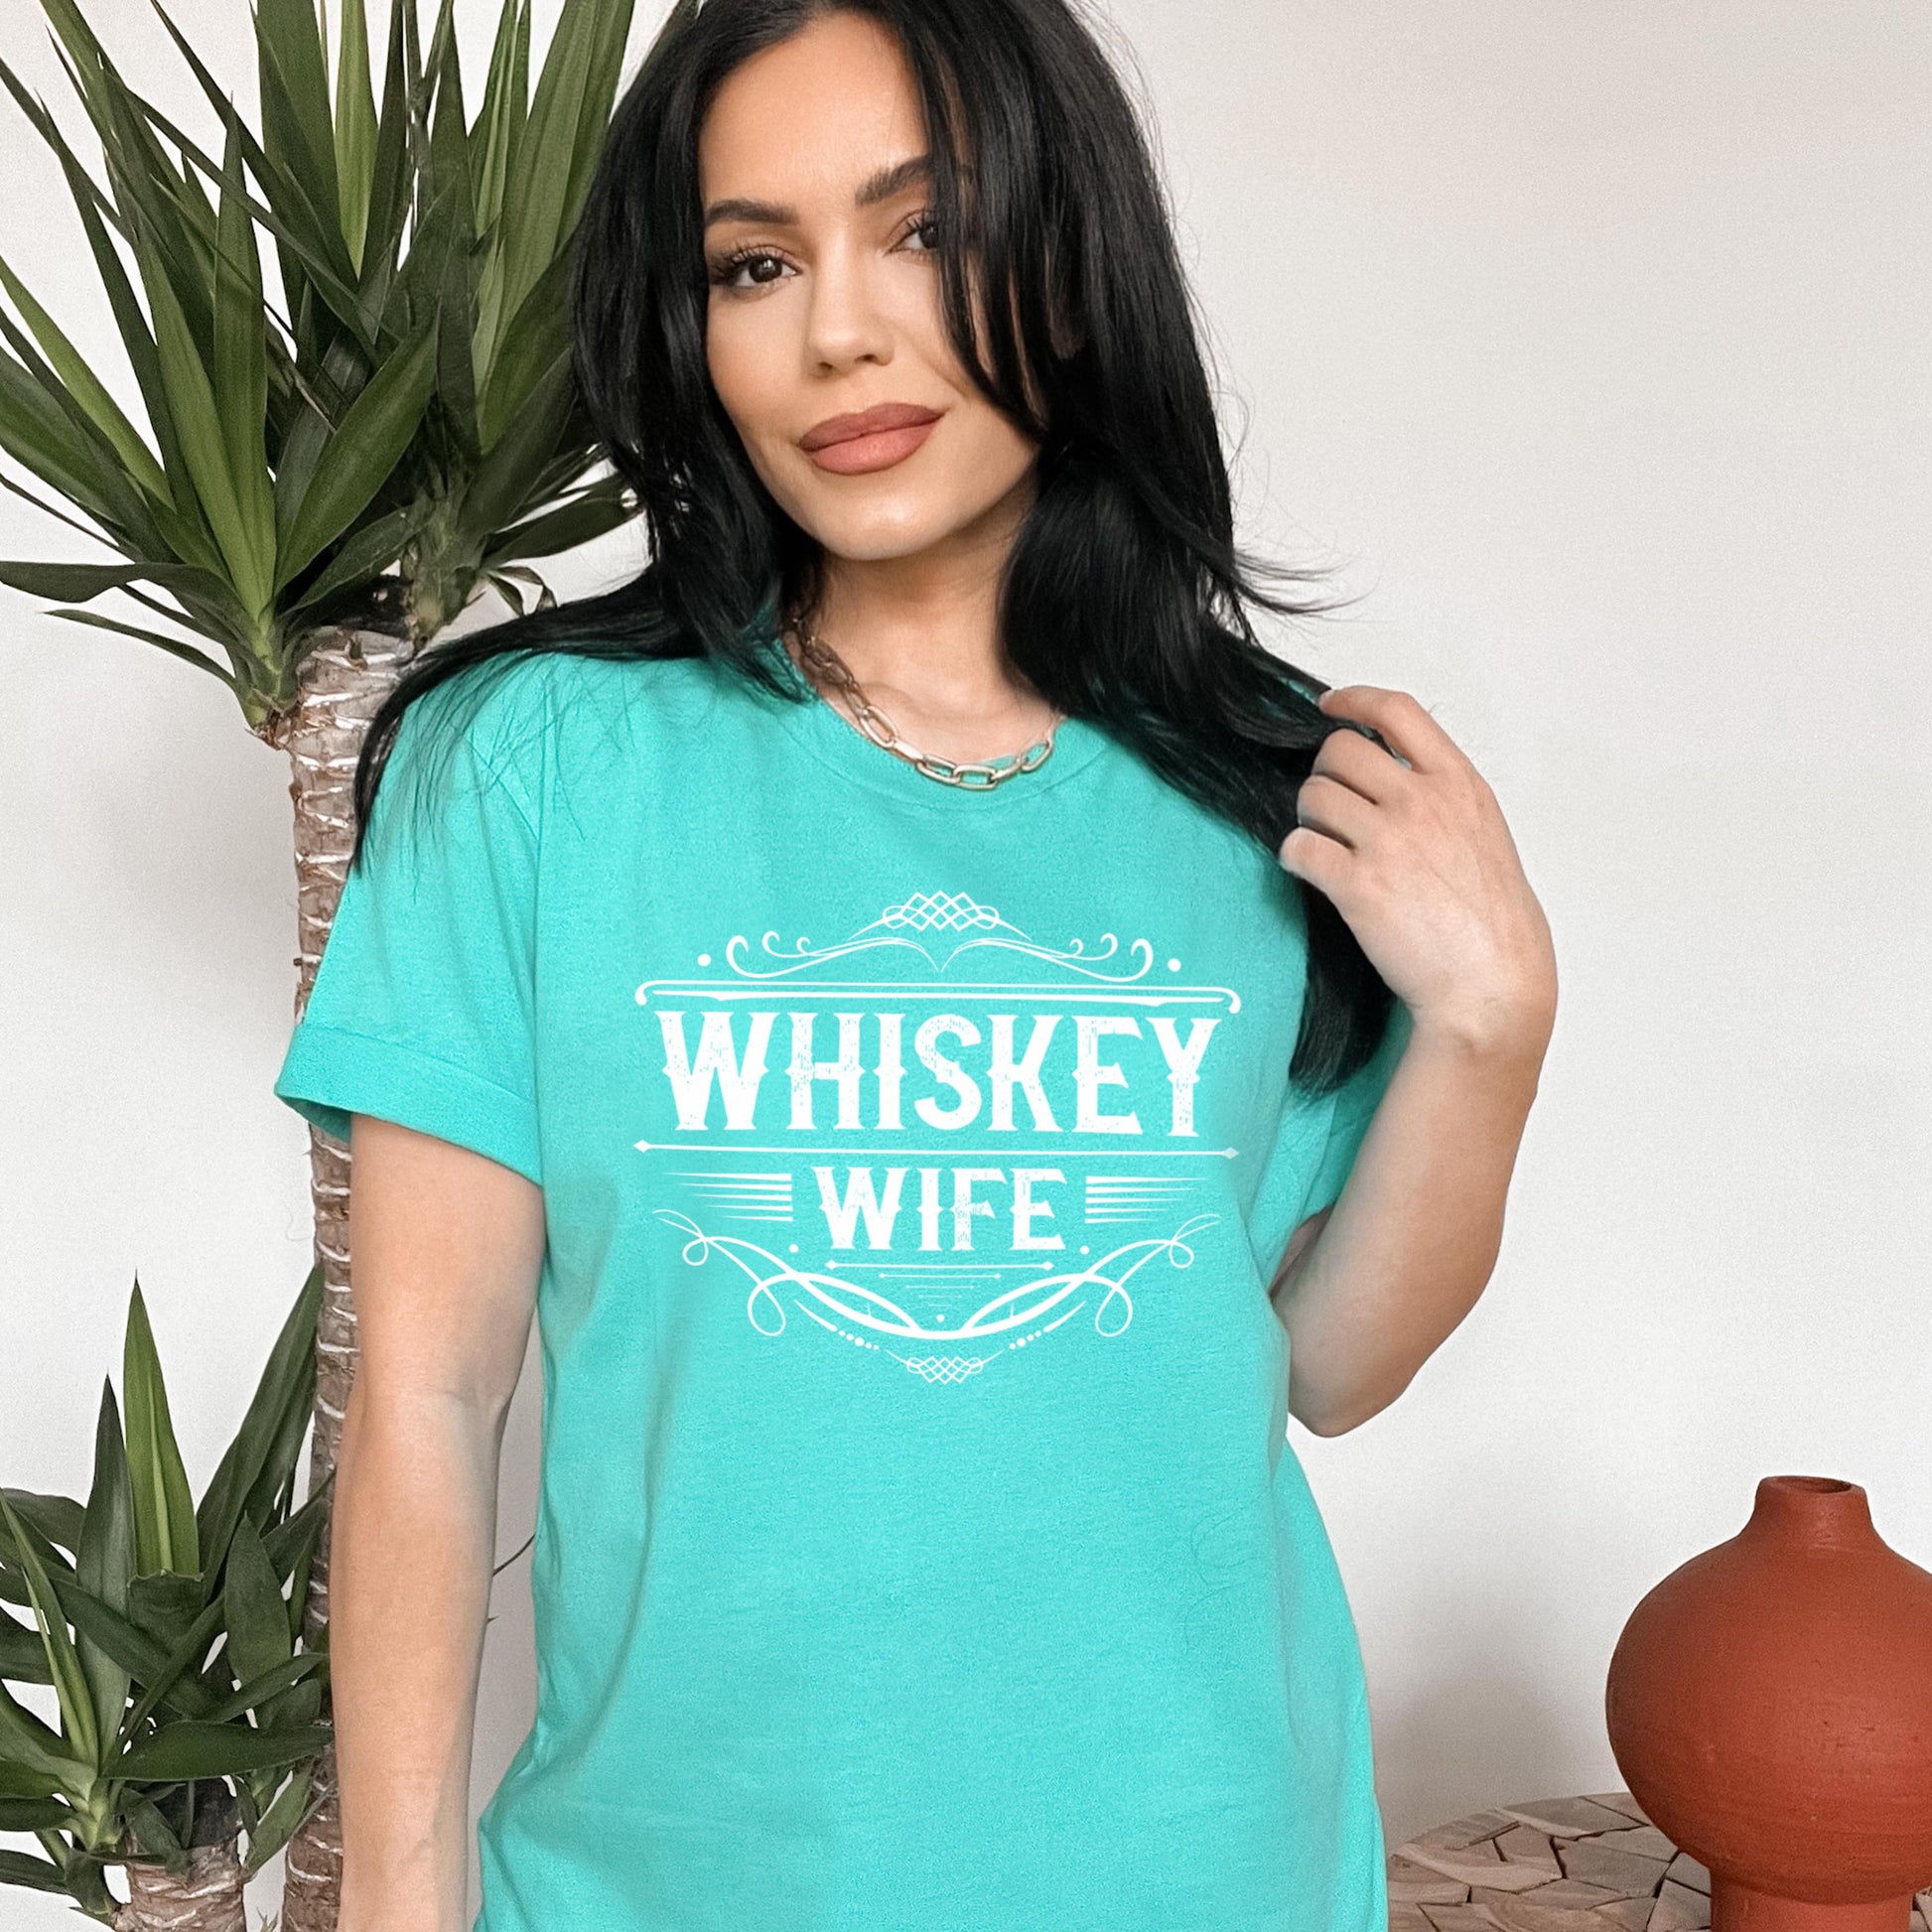 woman wearing light aqua whiskey wife t-shirt